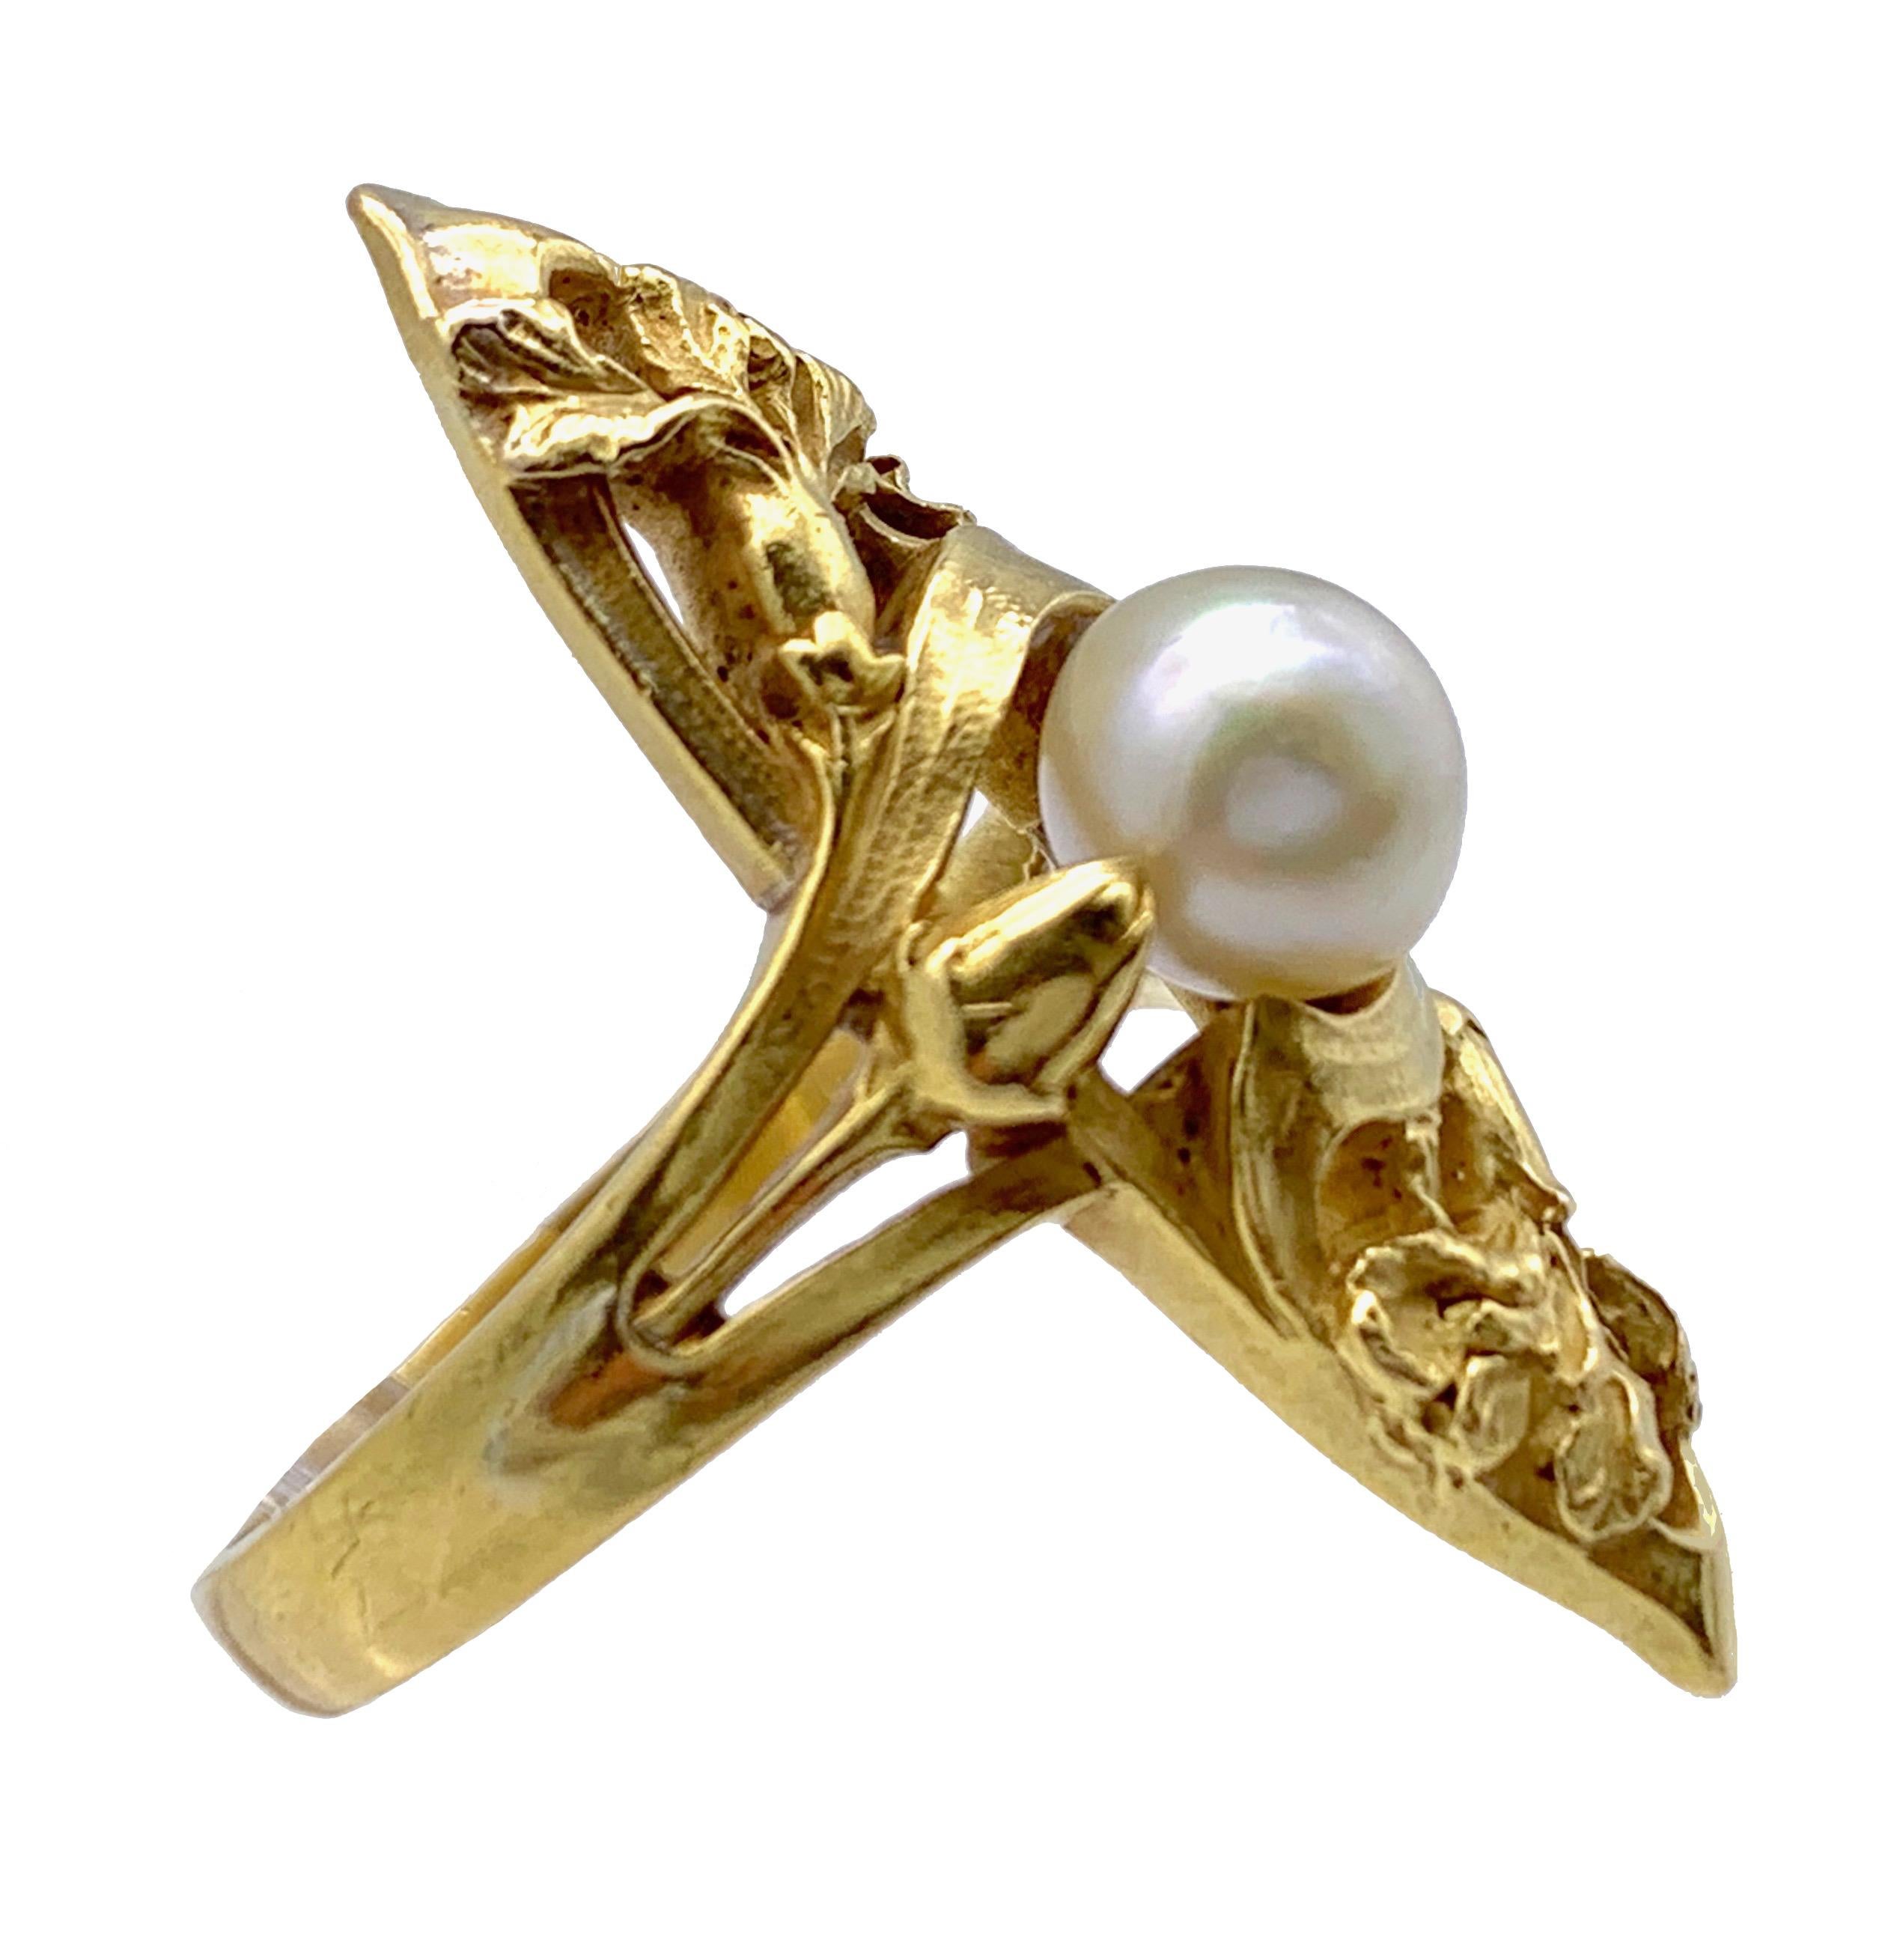 Dieser fein modellierte und äußerst seltene französische Jugendstilring zeigt zwei ineinander verschlungene Schwertlilien und zwei Blütenknospen, die eine feine weiße orientalische Perle umgeben. Dieses elegante und harmonisch gestaltete